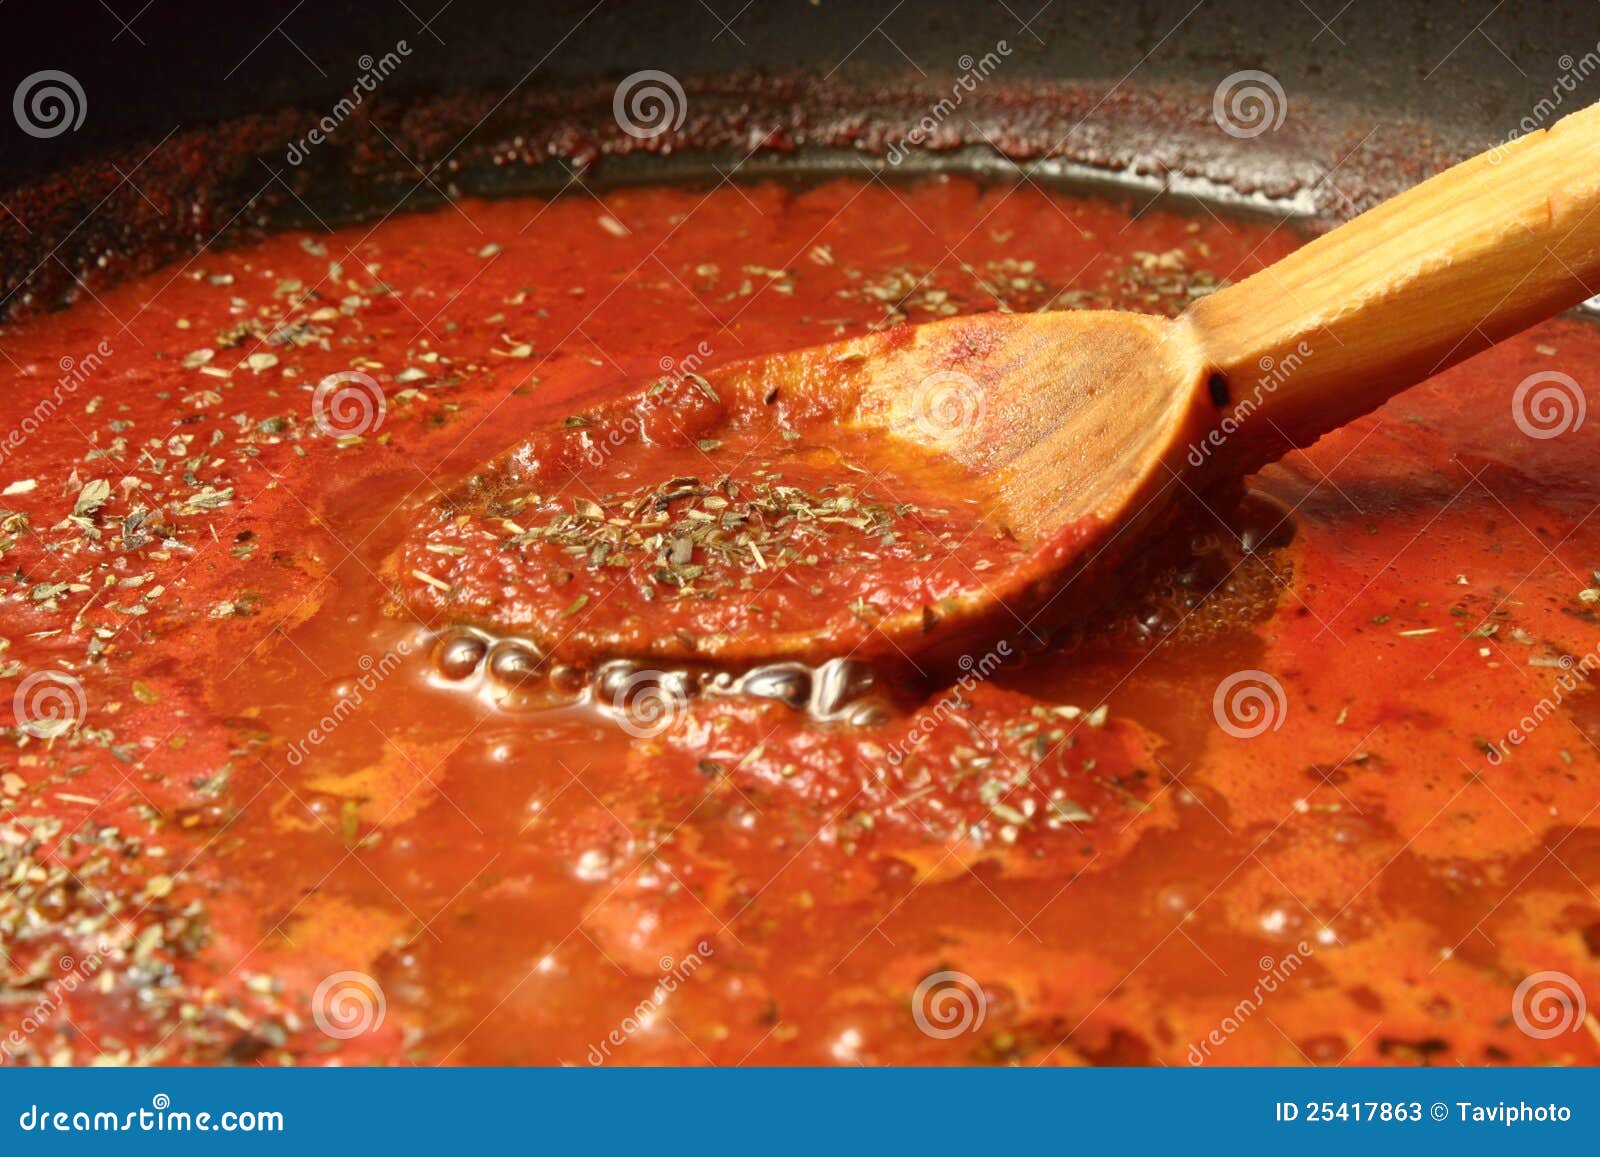 томатный соус для пиццы в домашних условиях как приготовить фото 81